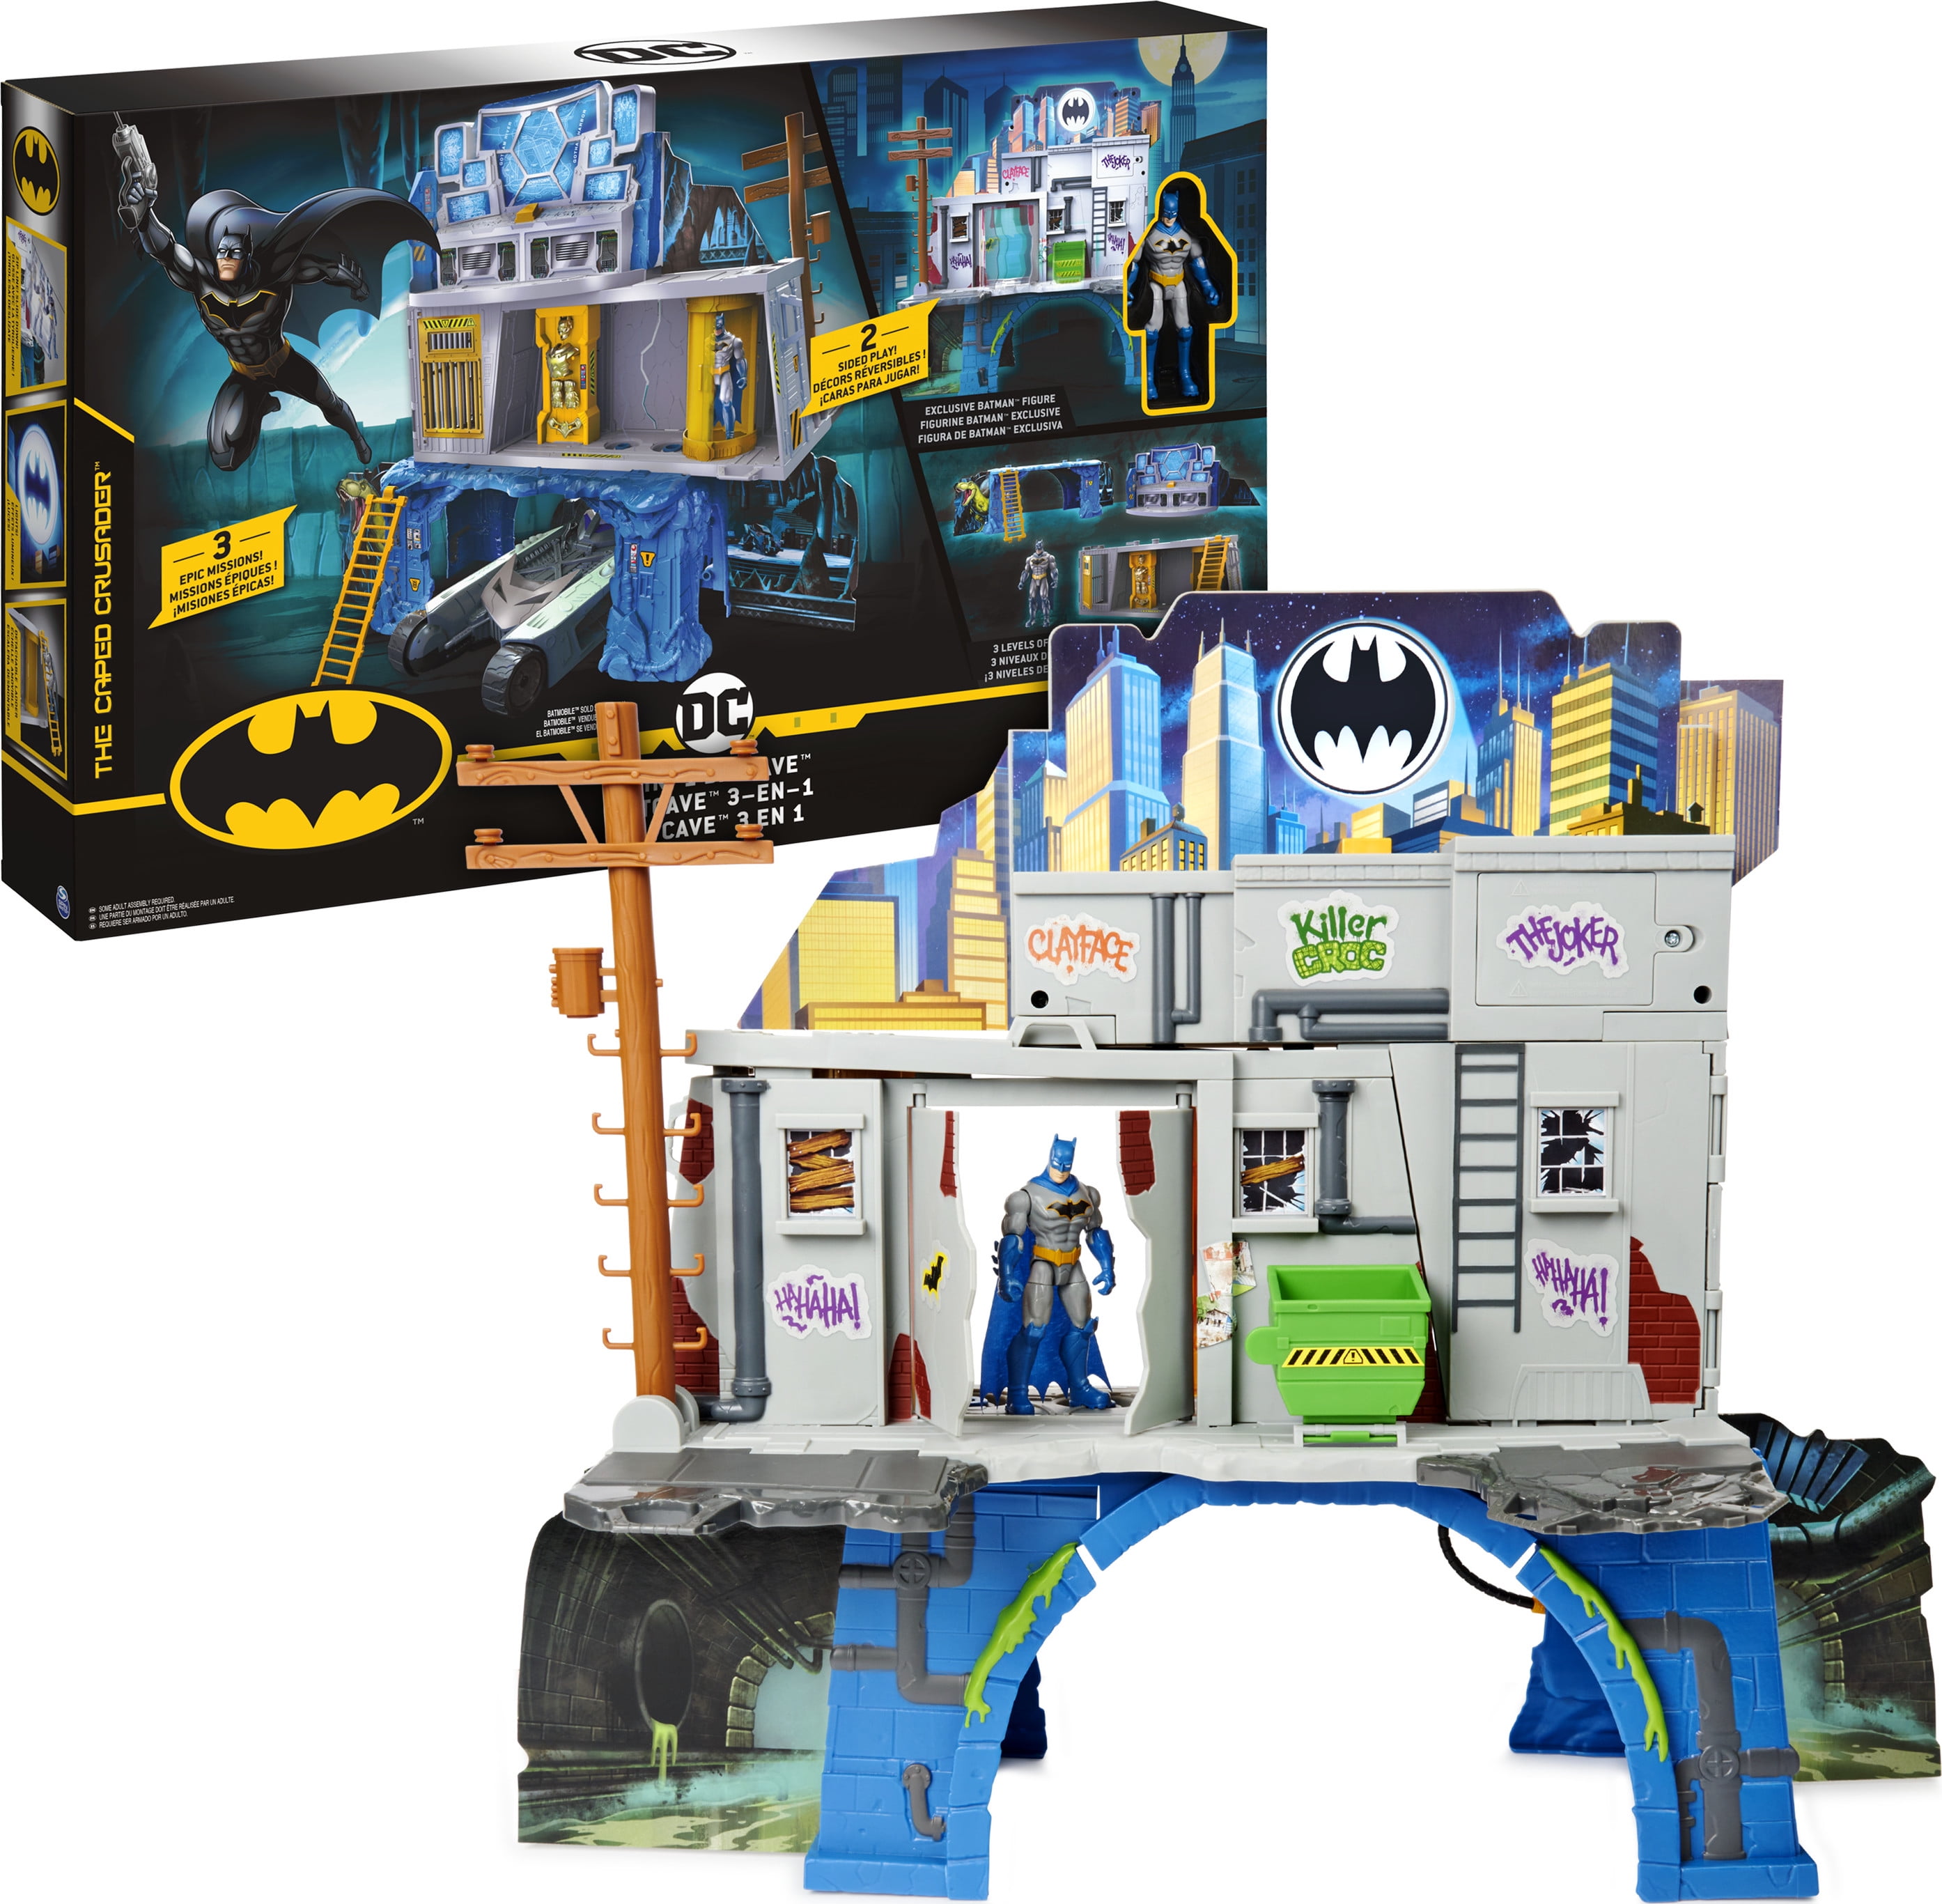 W9642 Gotham City Jail Playset Imaginext: DC Super Friends for sale online 